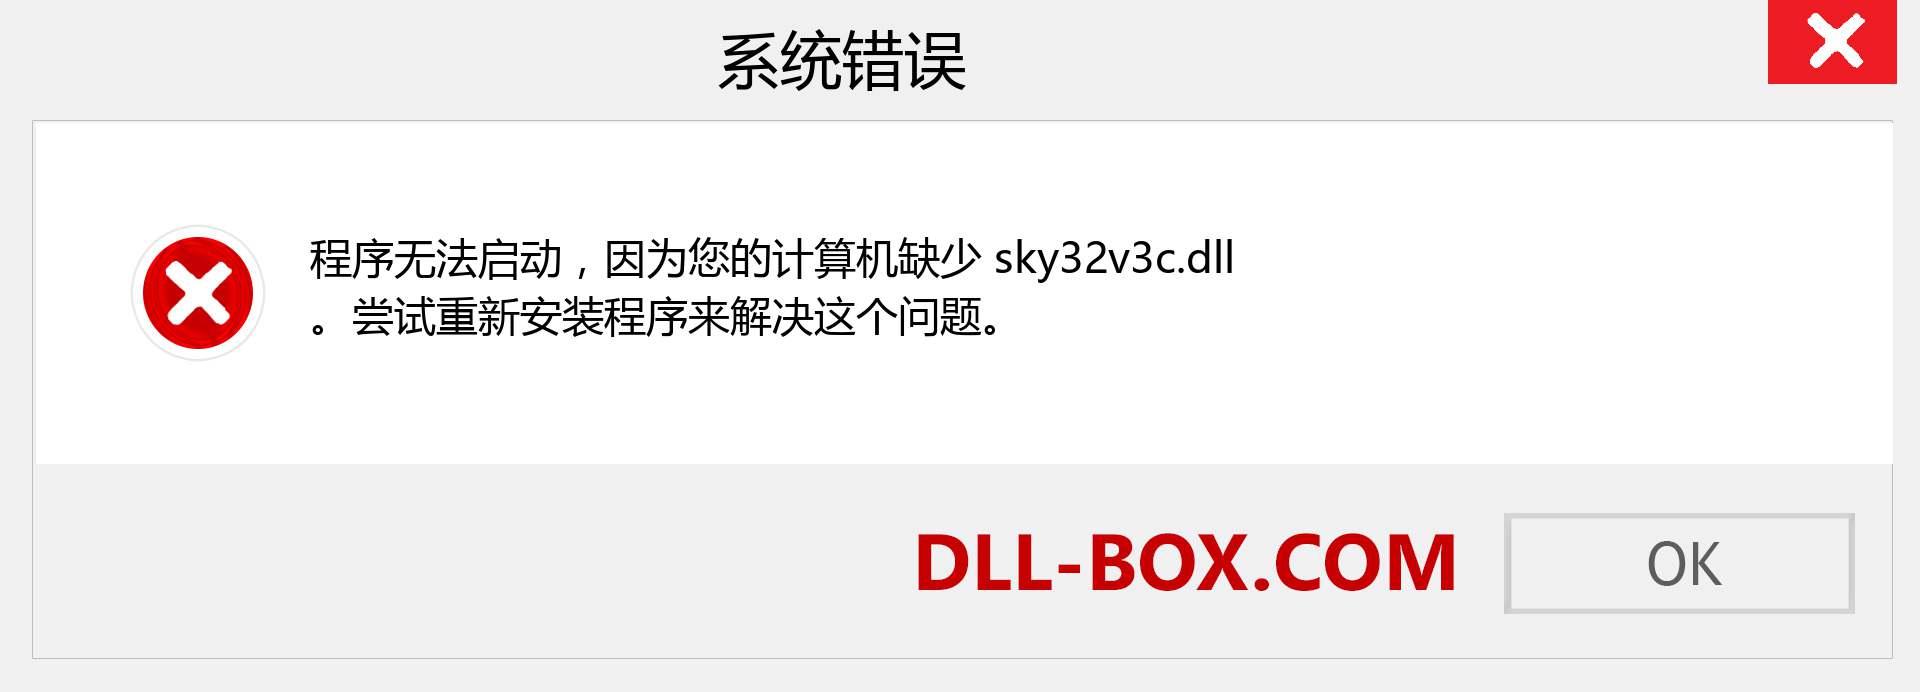 sky32v3c.dll 文件丢失？。 适用于 Windows 7、8、10 的下载 - 修复 Windows、照片、图像上的 sky32v3c dll 丢失错误